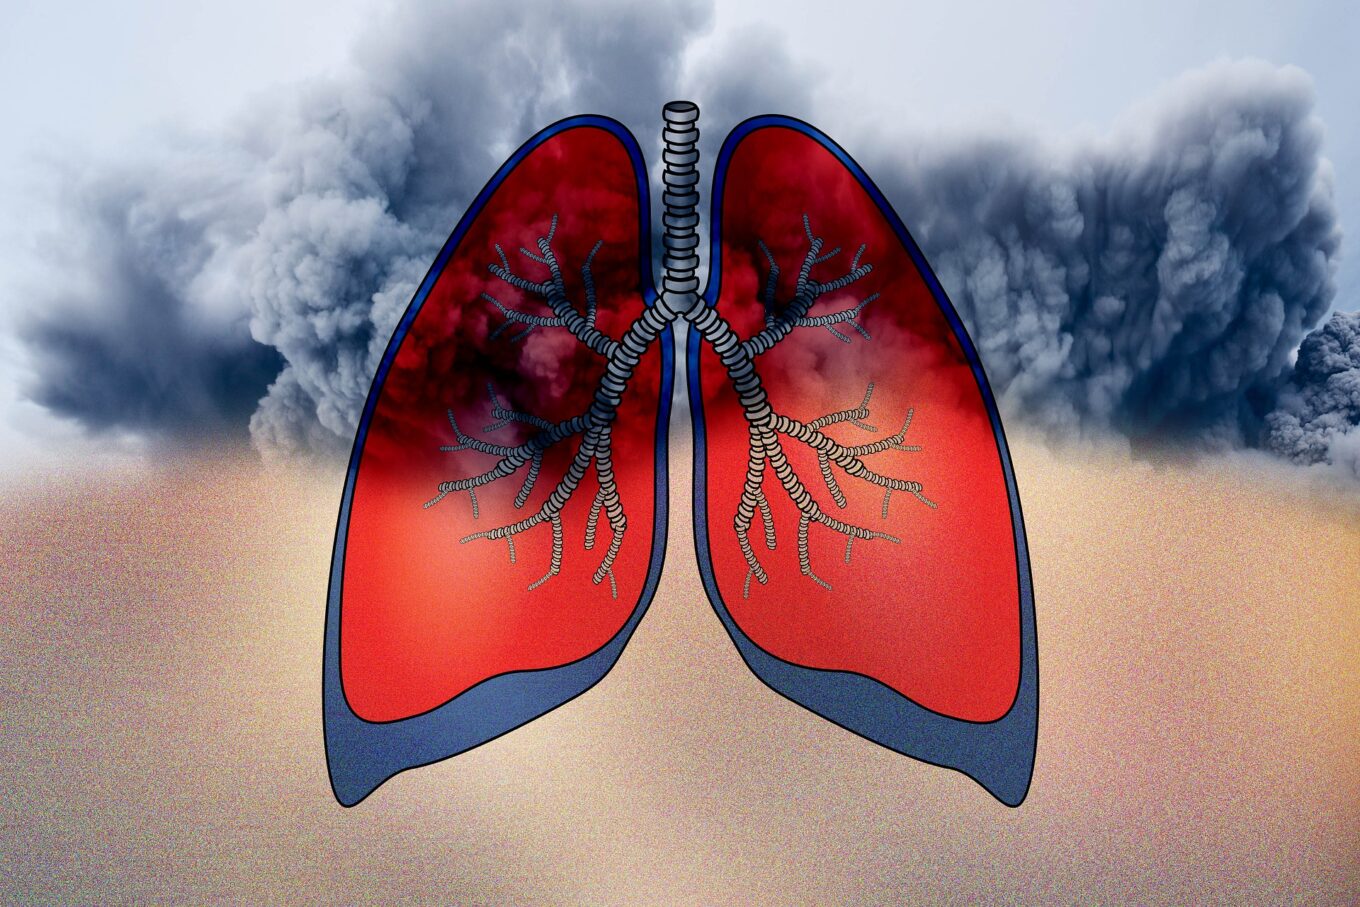 Wood Smoke Allergies: Impact on Breathing